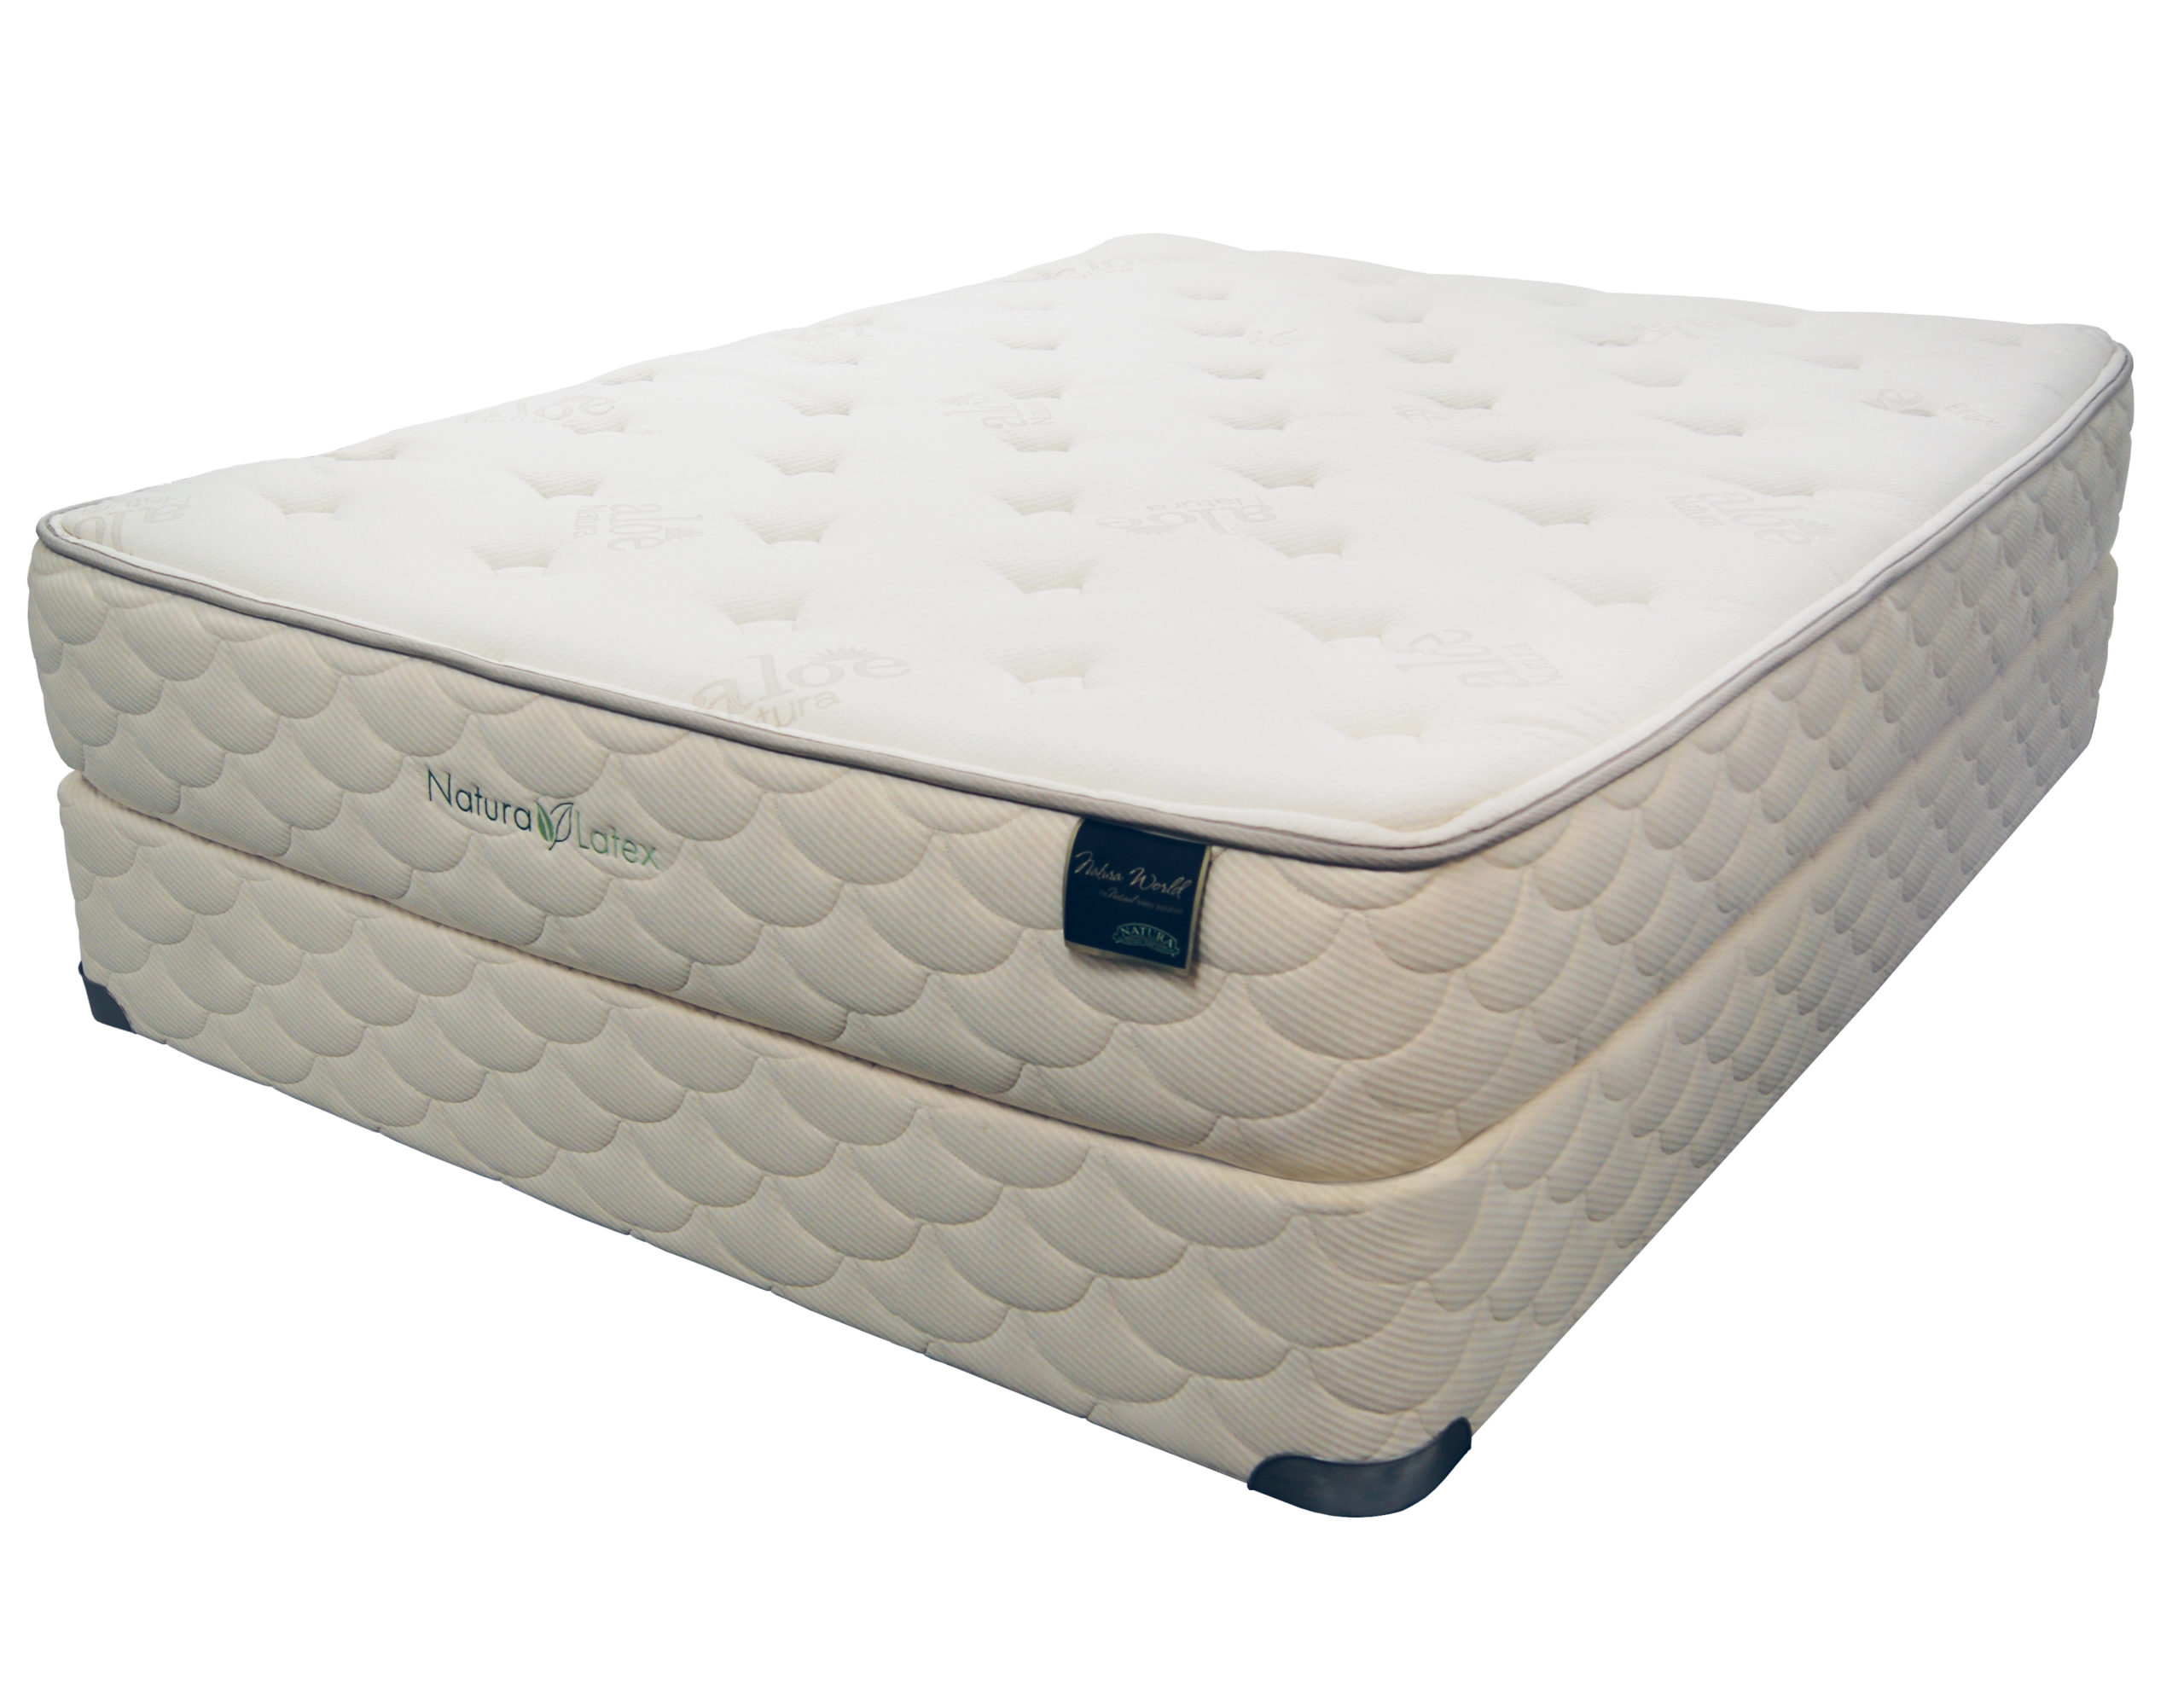 firm latex mattress pads